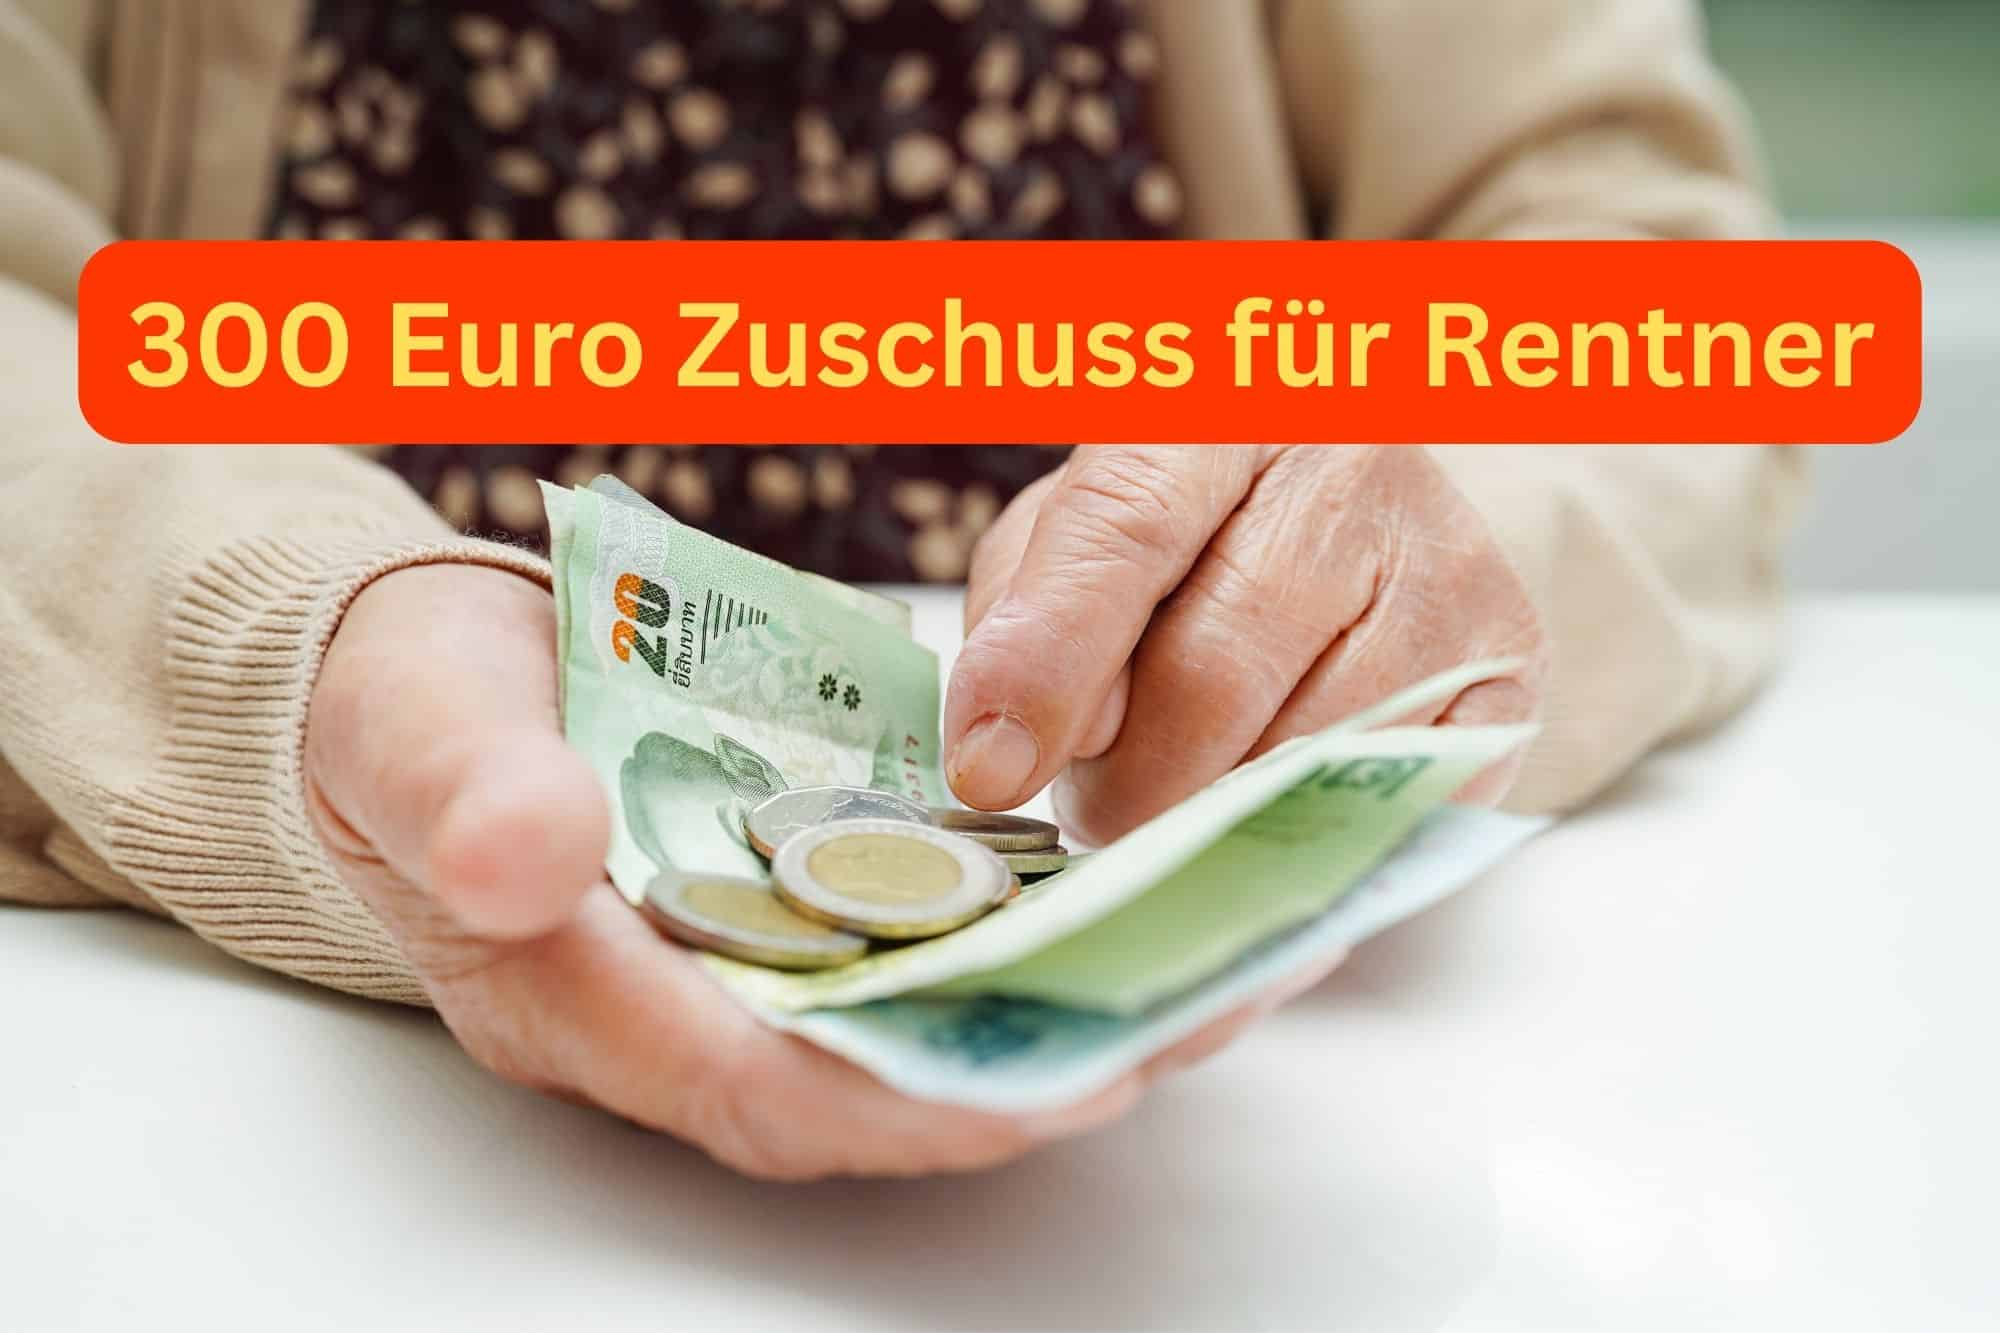 300 Euro-Zuschuss für Rentner kommt